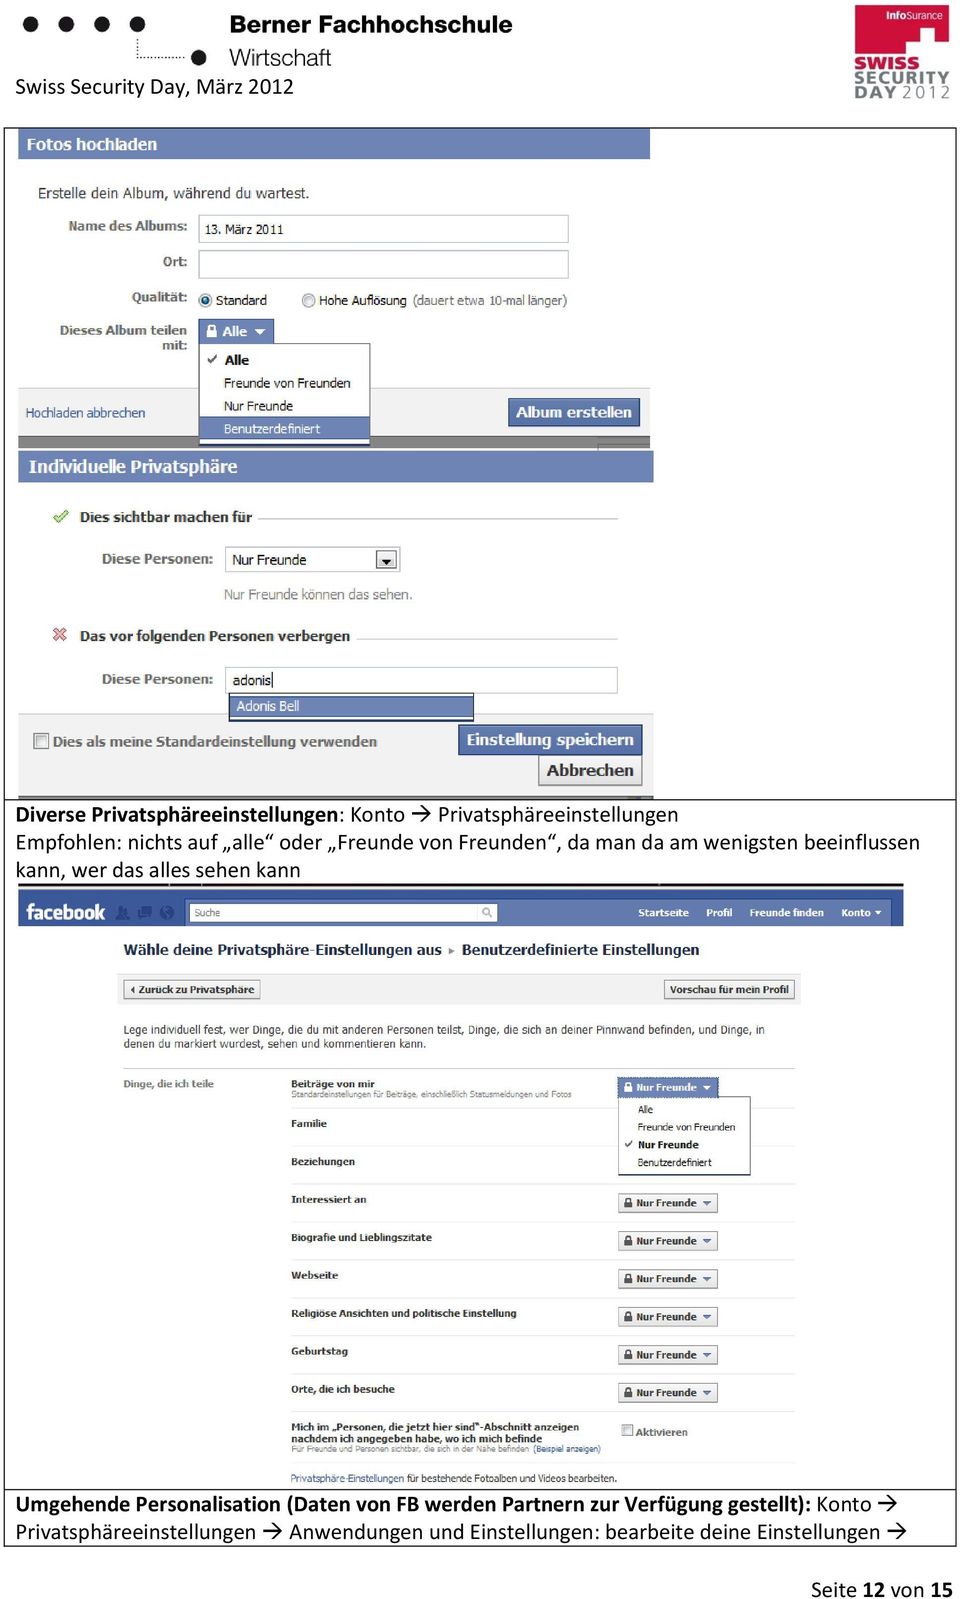 Umgehende Personalisation (Daten von FB werden Partnern zur Verfügung gestellt): Konto